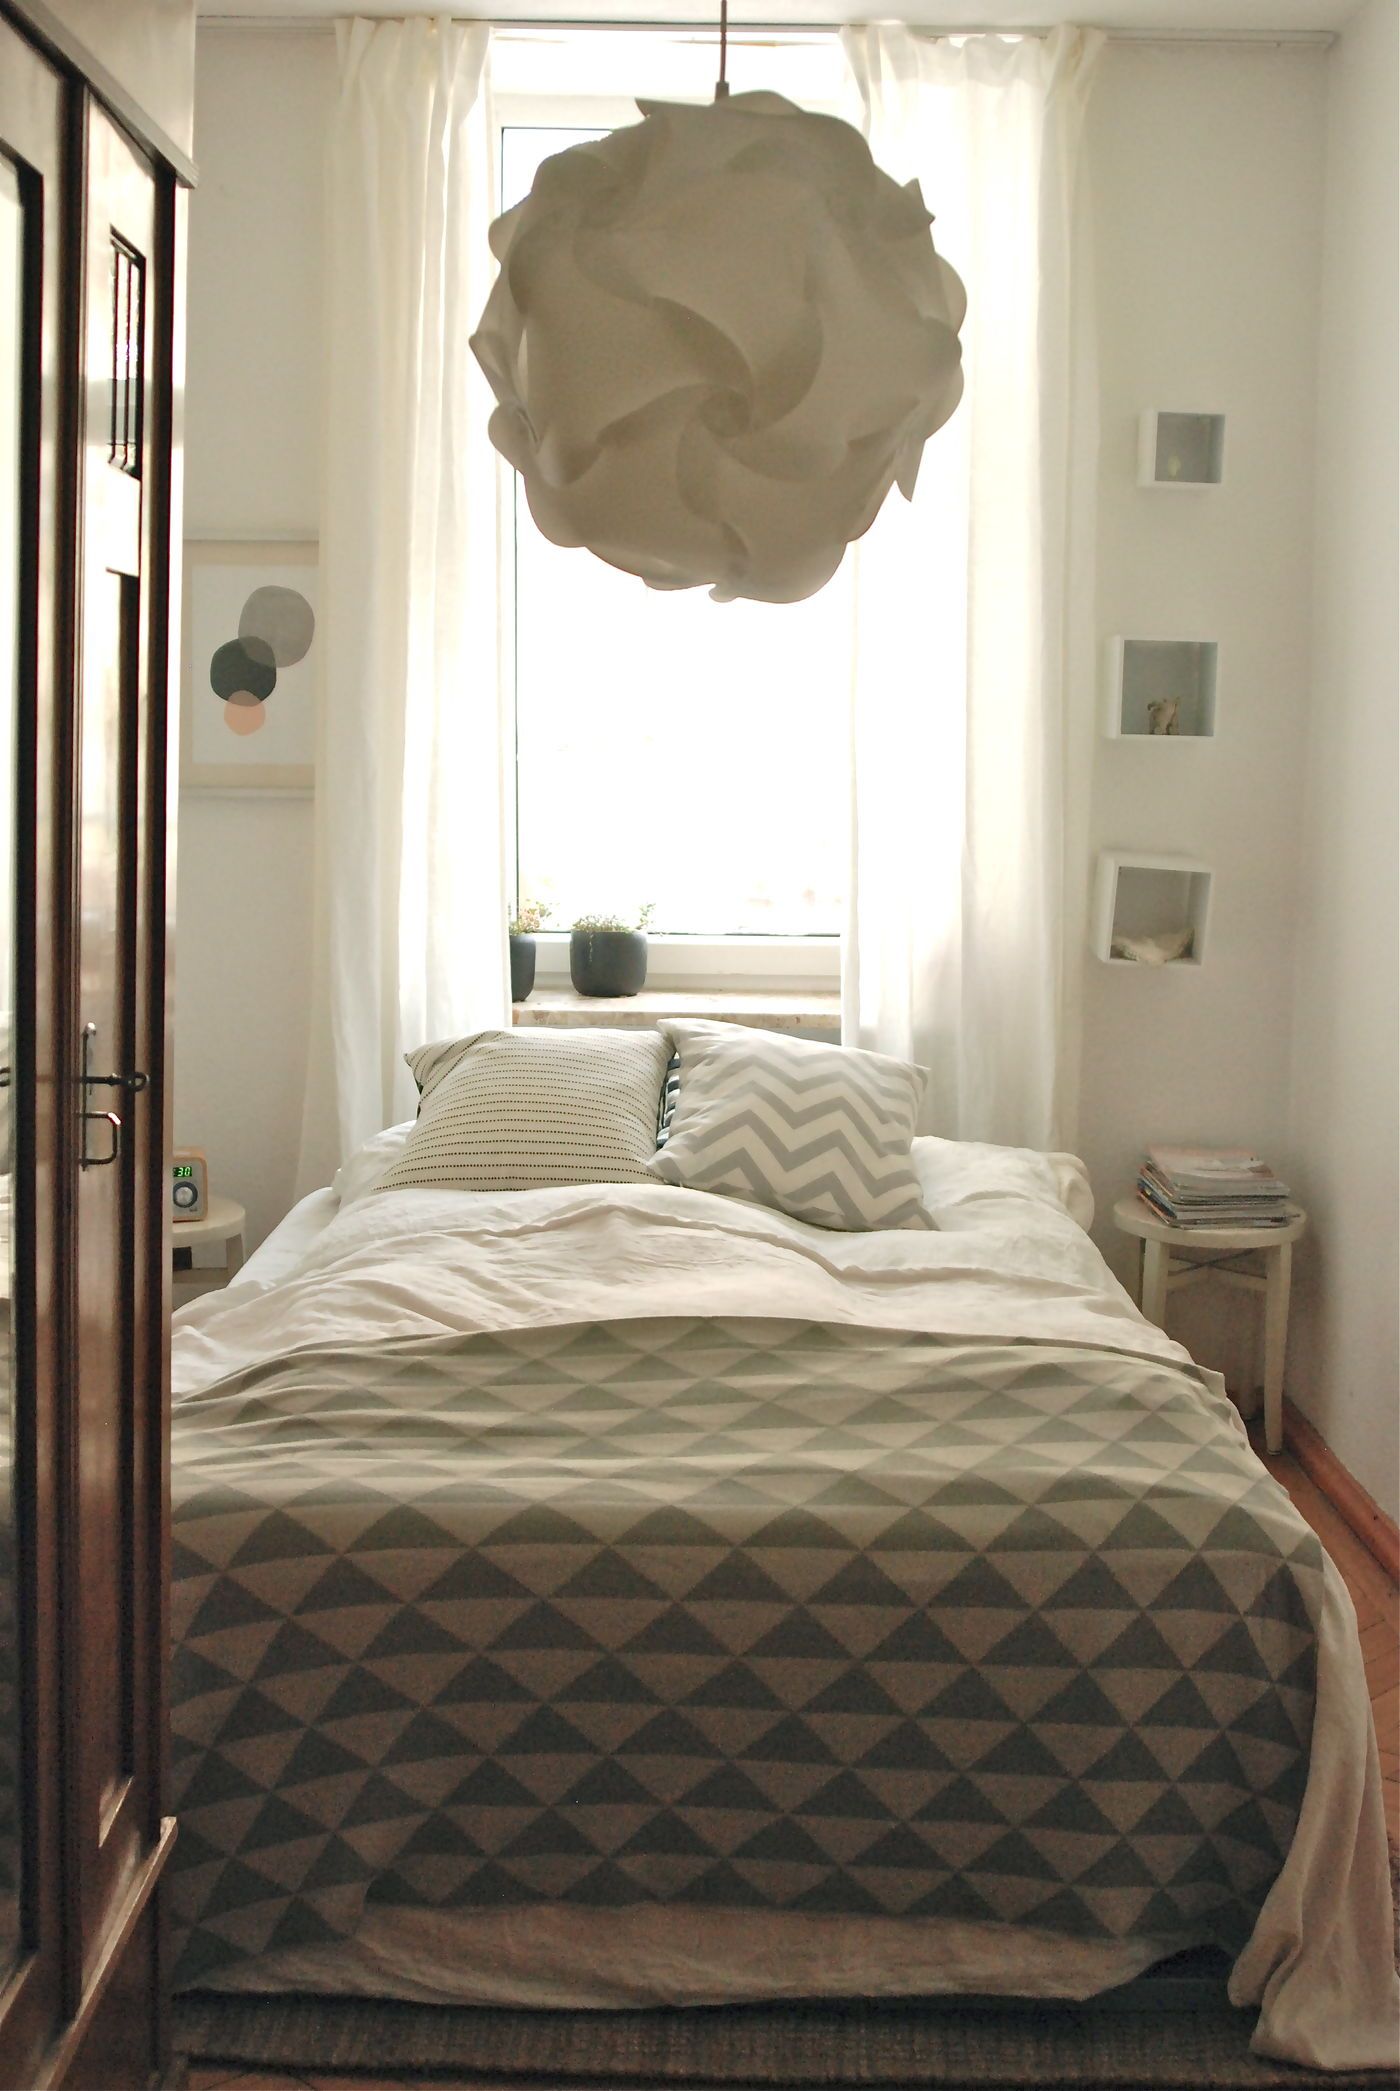 schlafzimmer kleines winterschlaf beispiele qm wohnraum solebich homestory